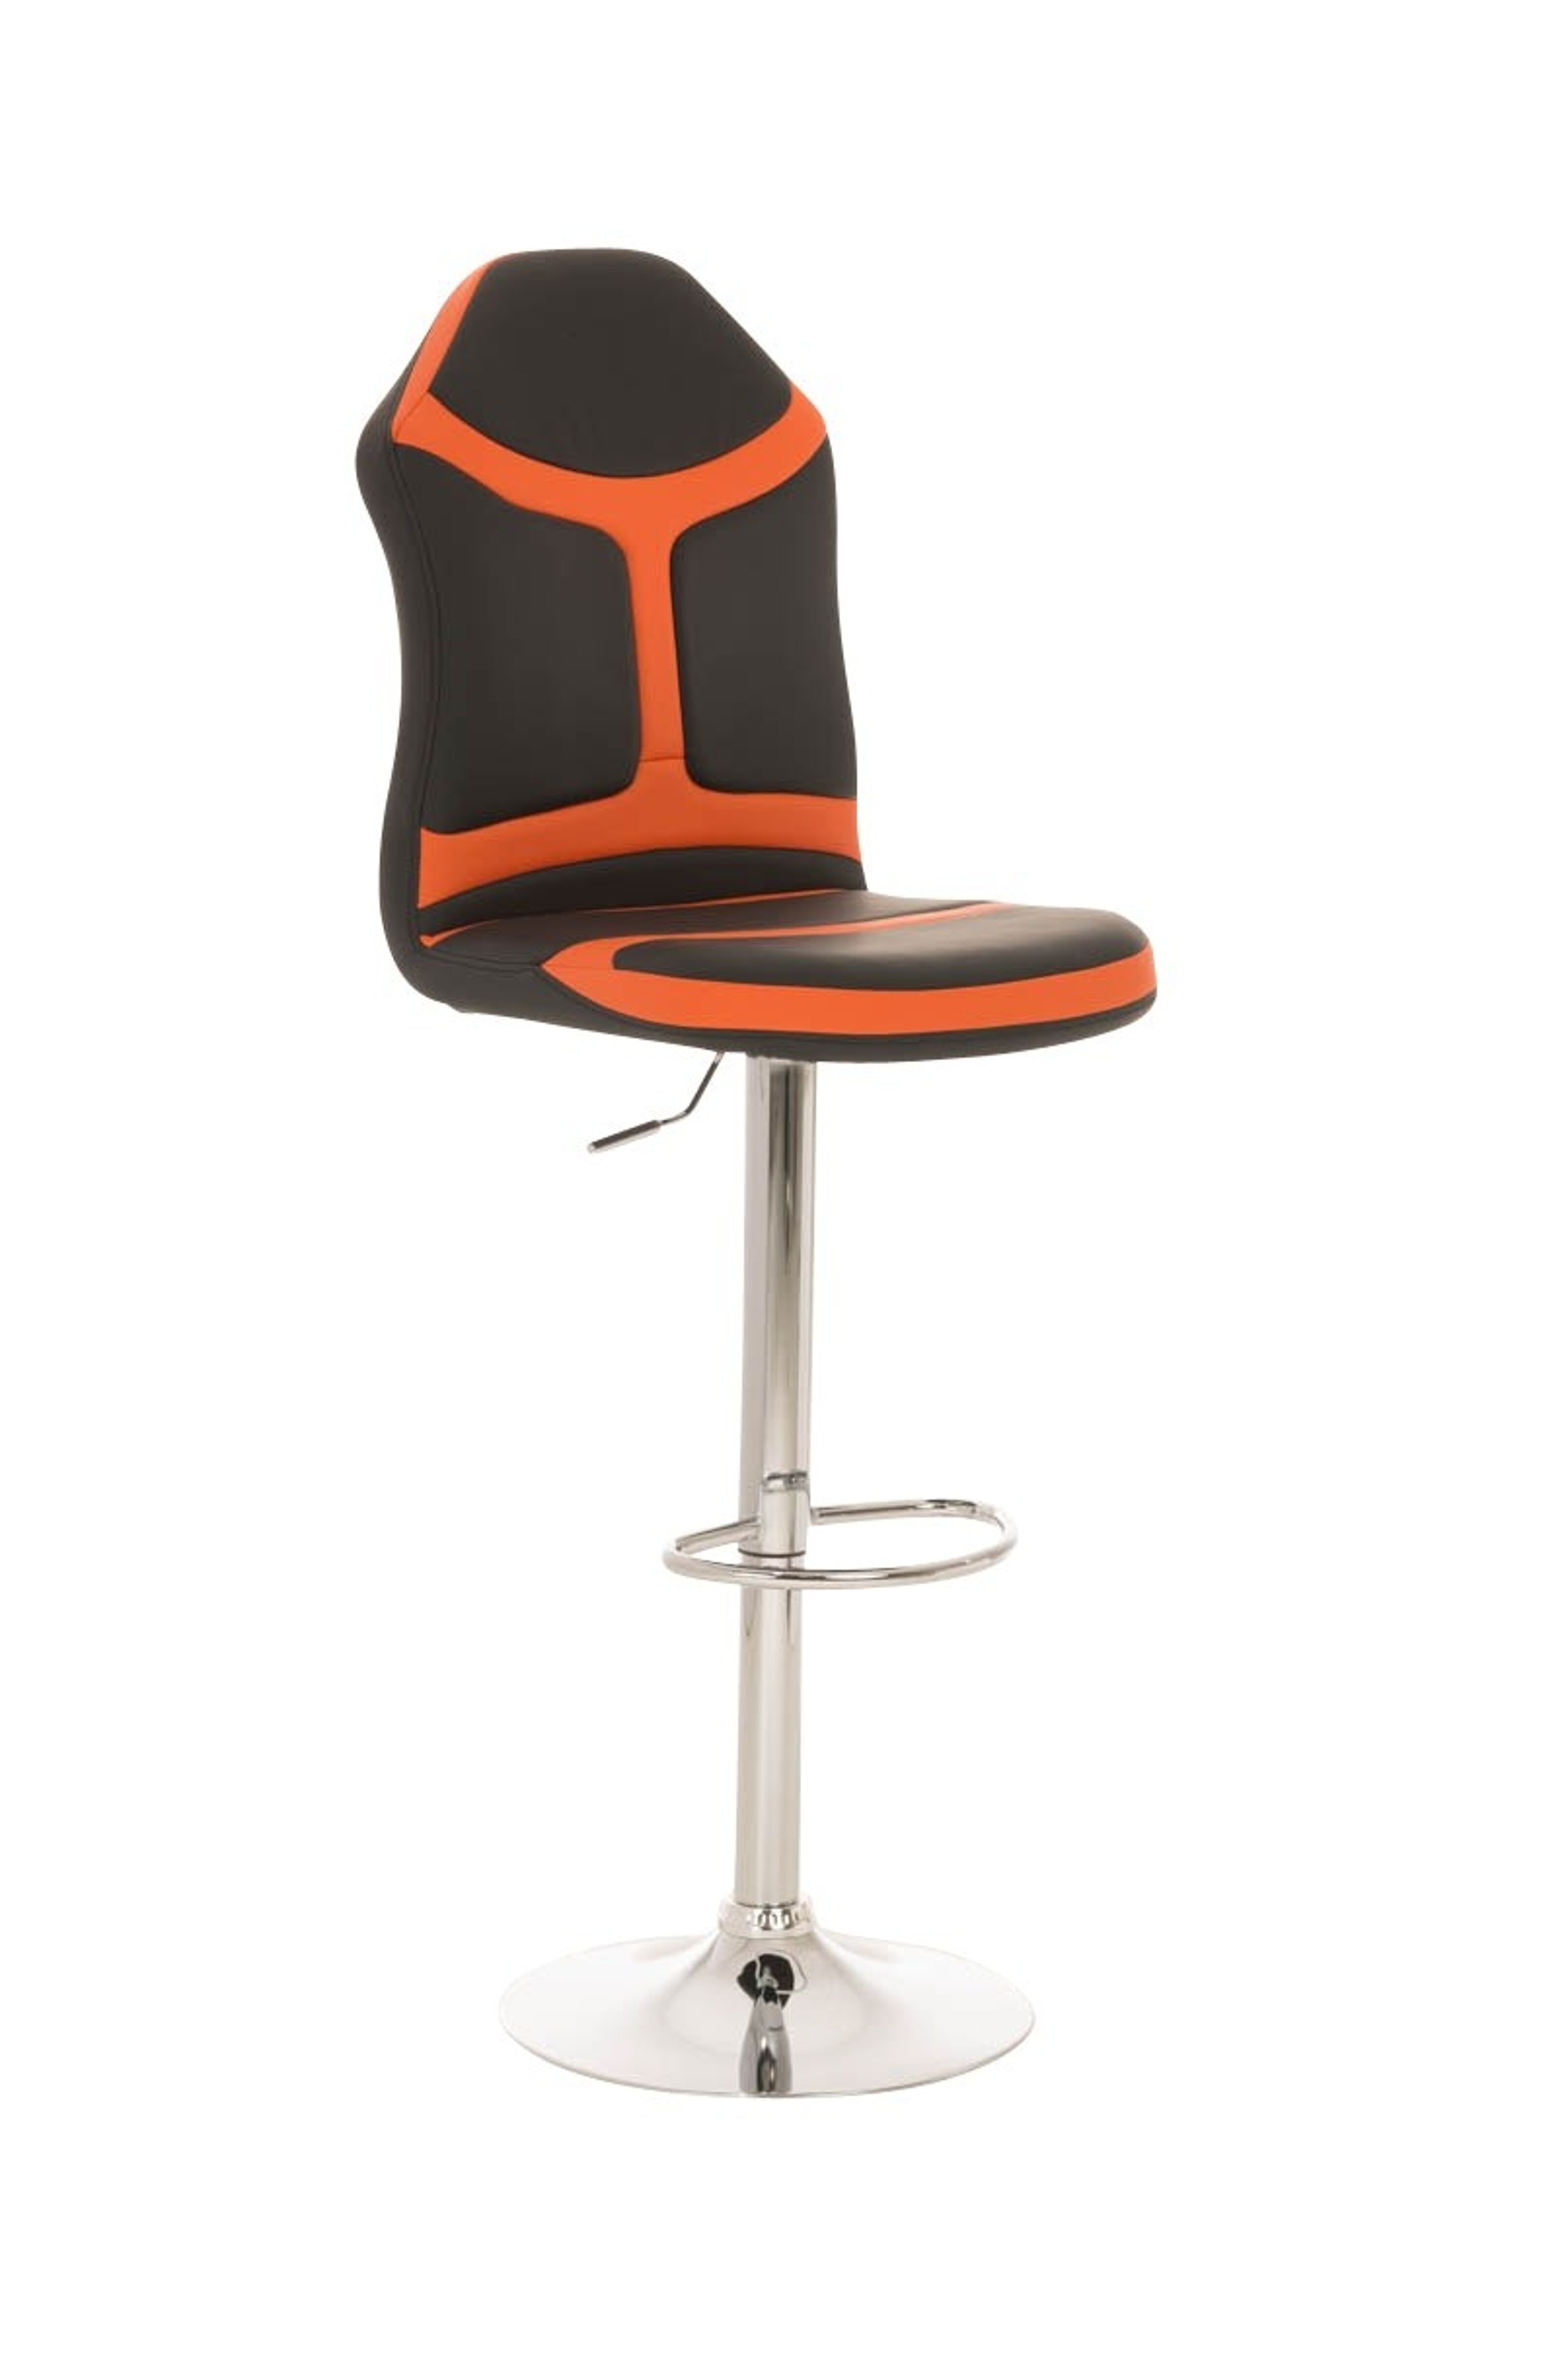 Vente housses de sièges auto en cuir artificiel (noir, orange) en